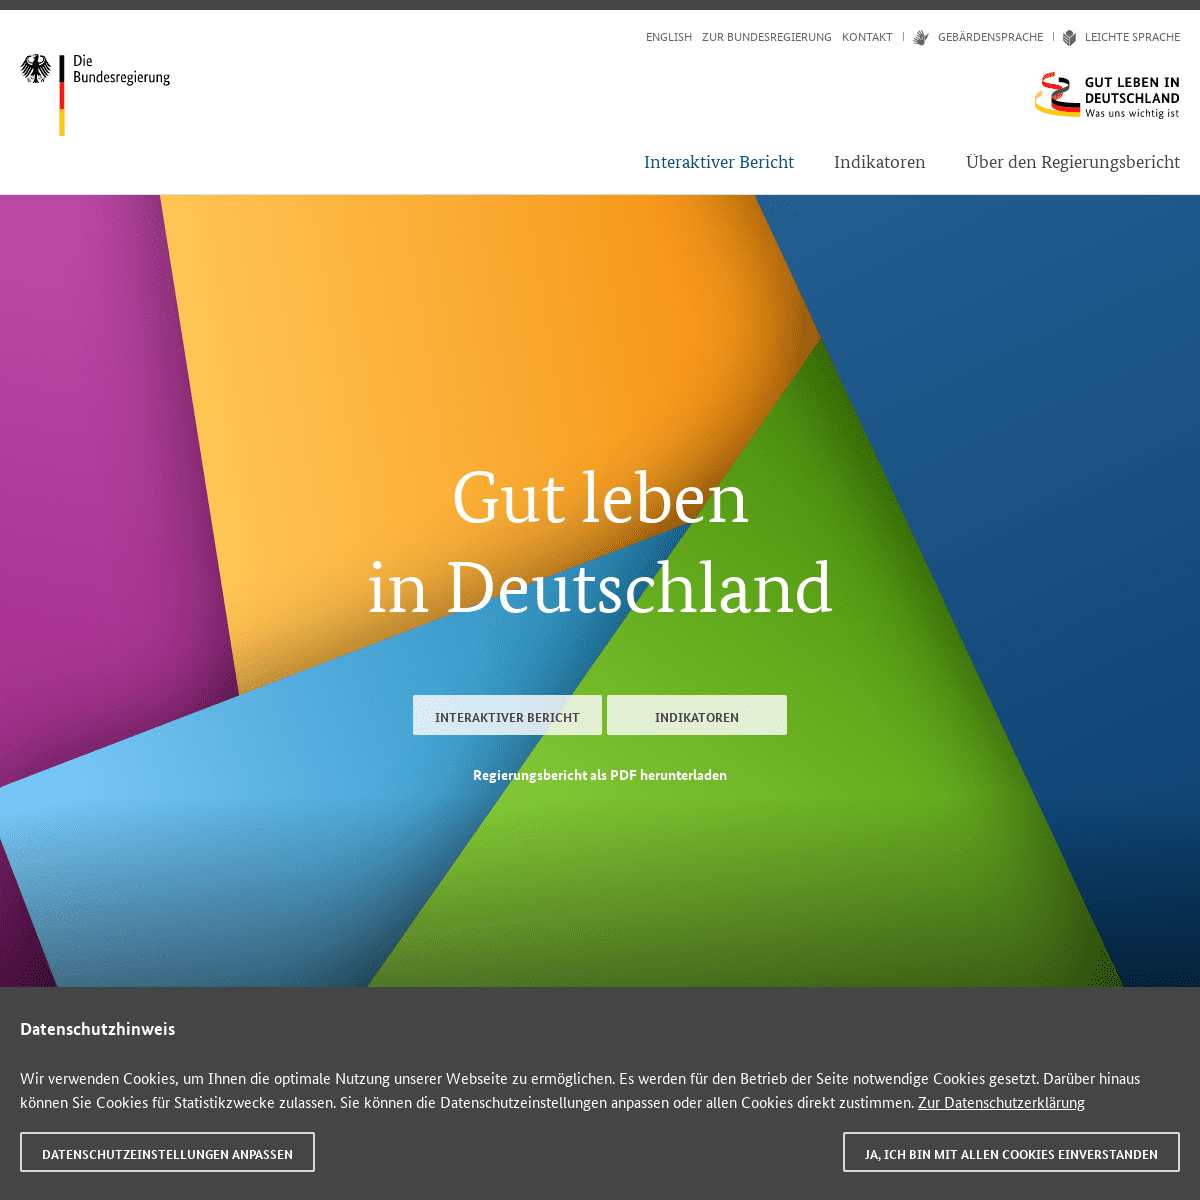 A complete backup of https://gut-leben-in-deutschland.de